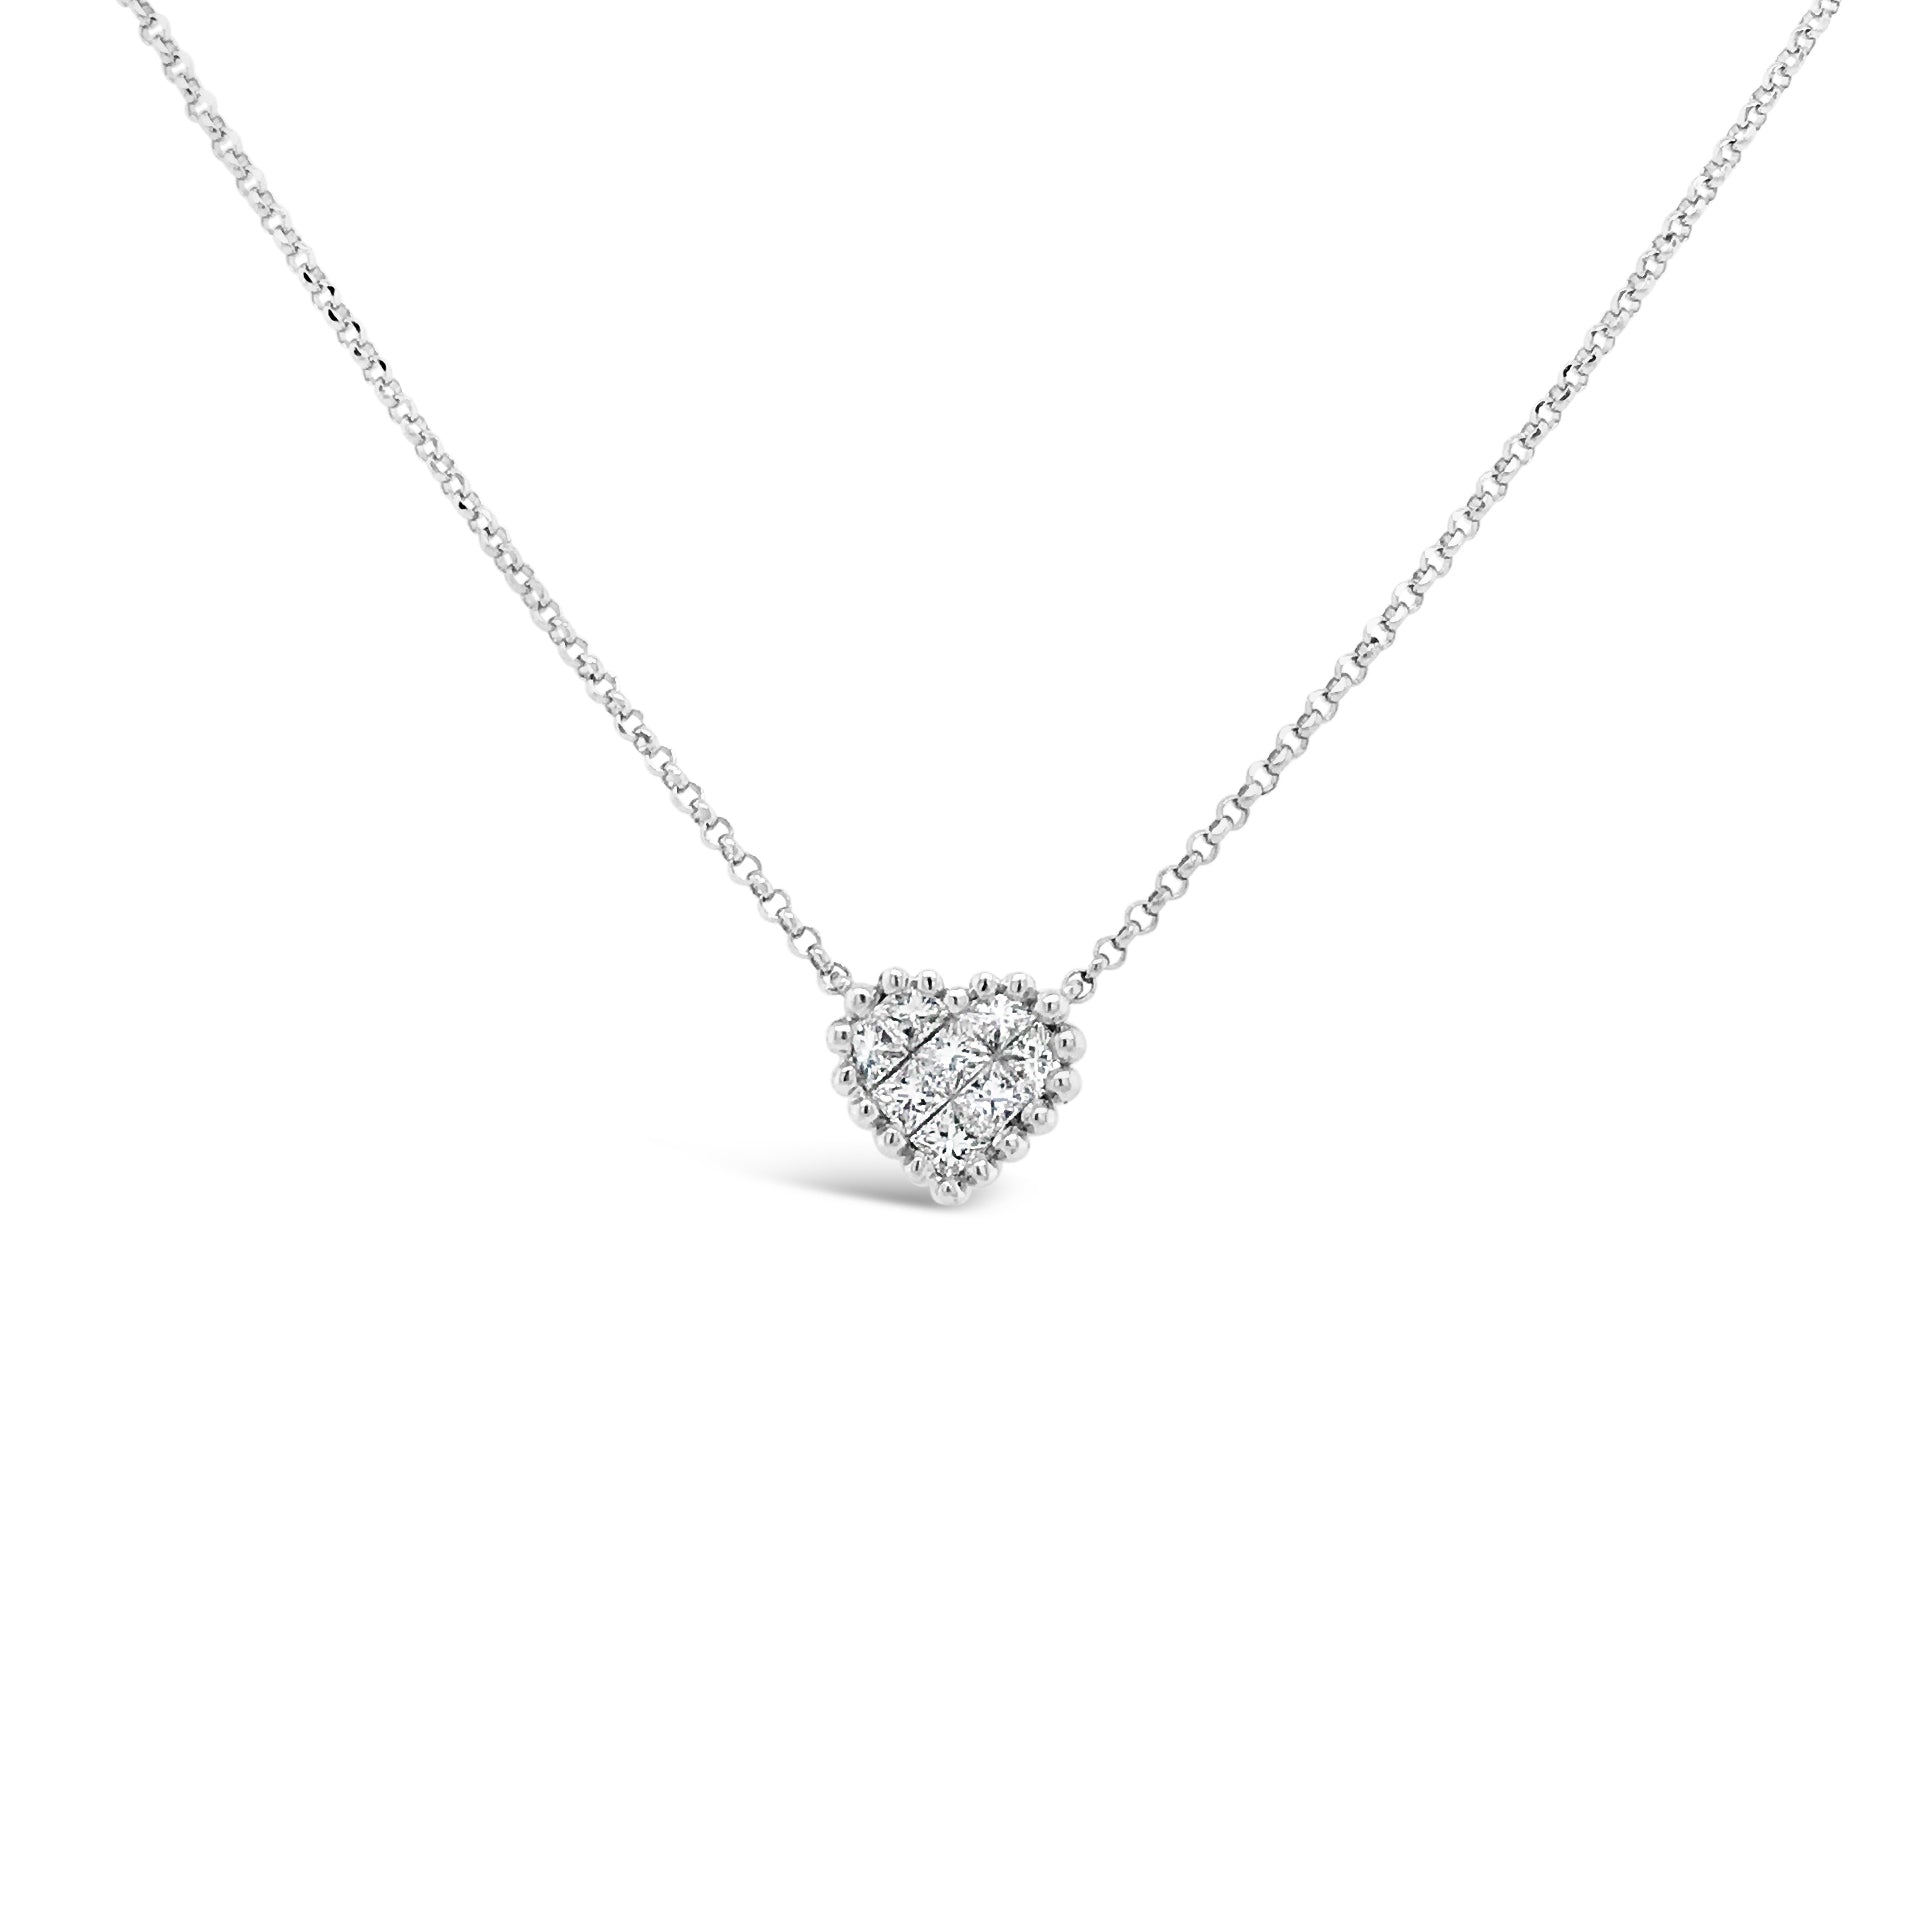 Diamond Tiny Heart Necklace  -18K gold weighing 2.58 grams  -8 princess-cut diamonds totaling 0.24 carats